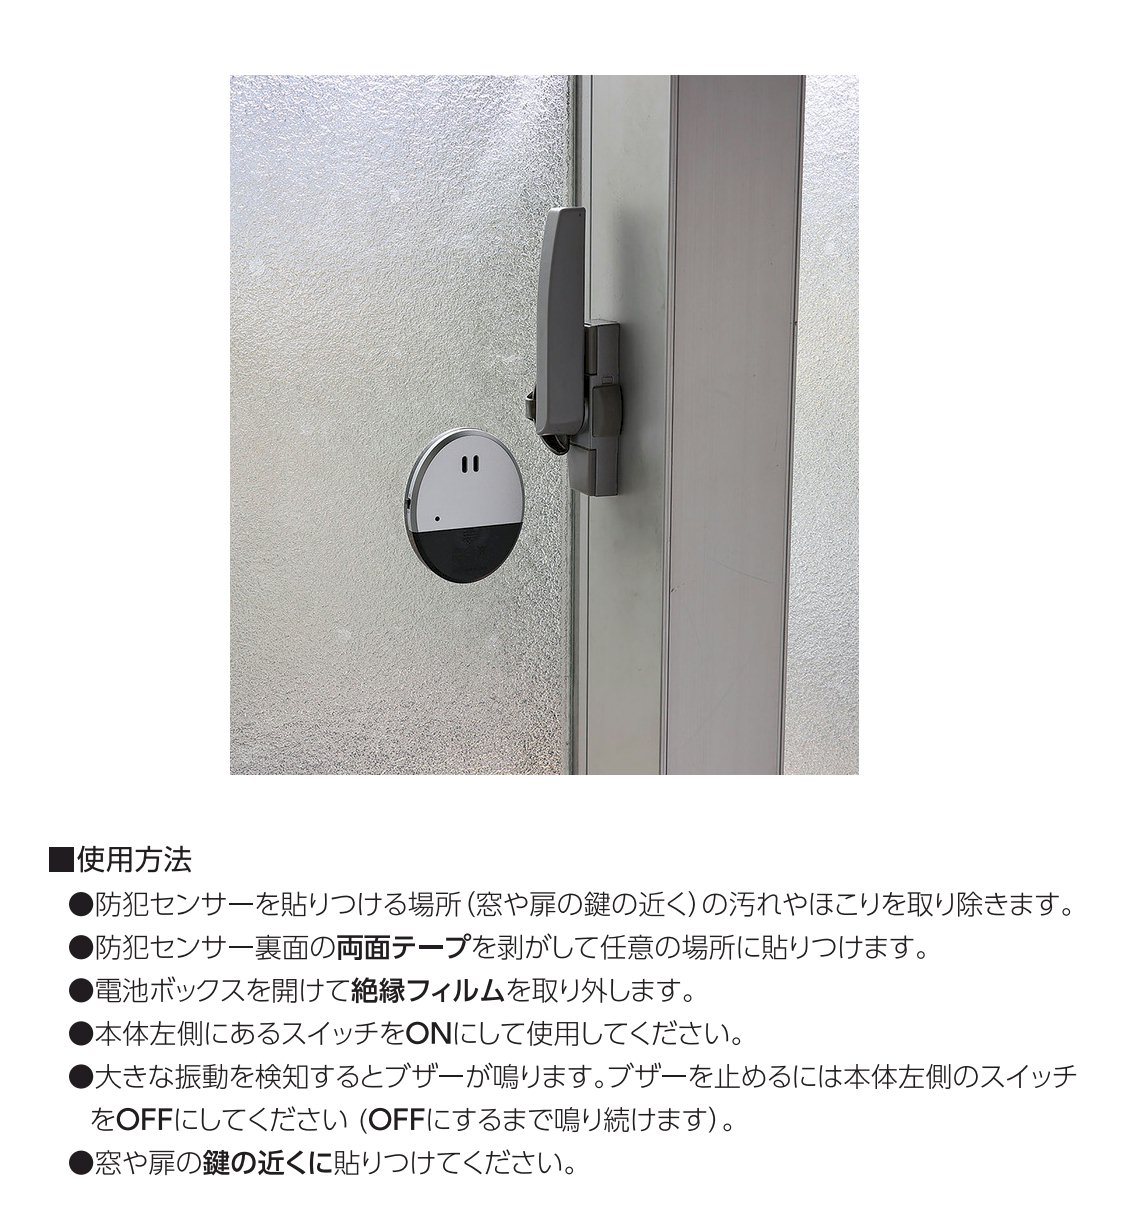 防犯センサー 振動感知タイプ 貼るだけ 窓 玄関ドア 防犯対策 大音量